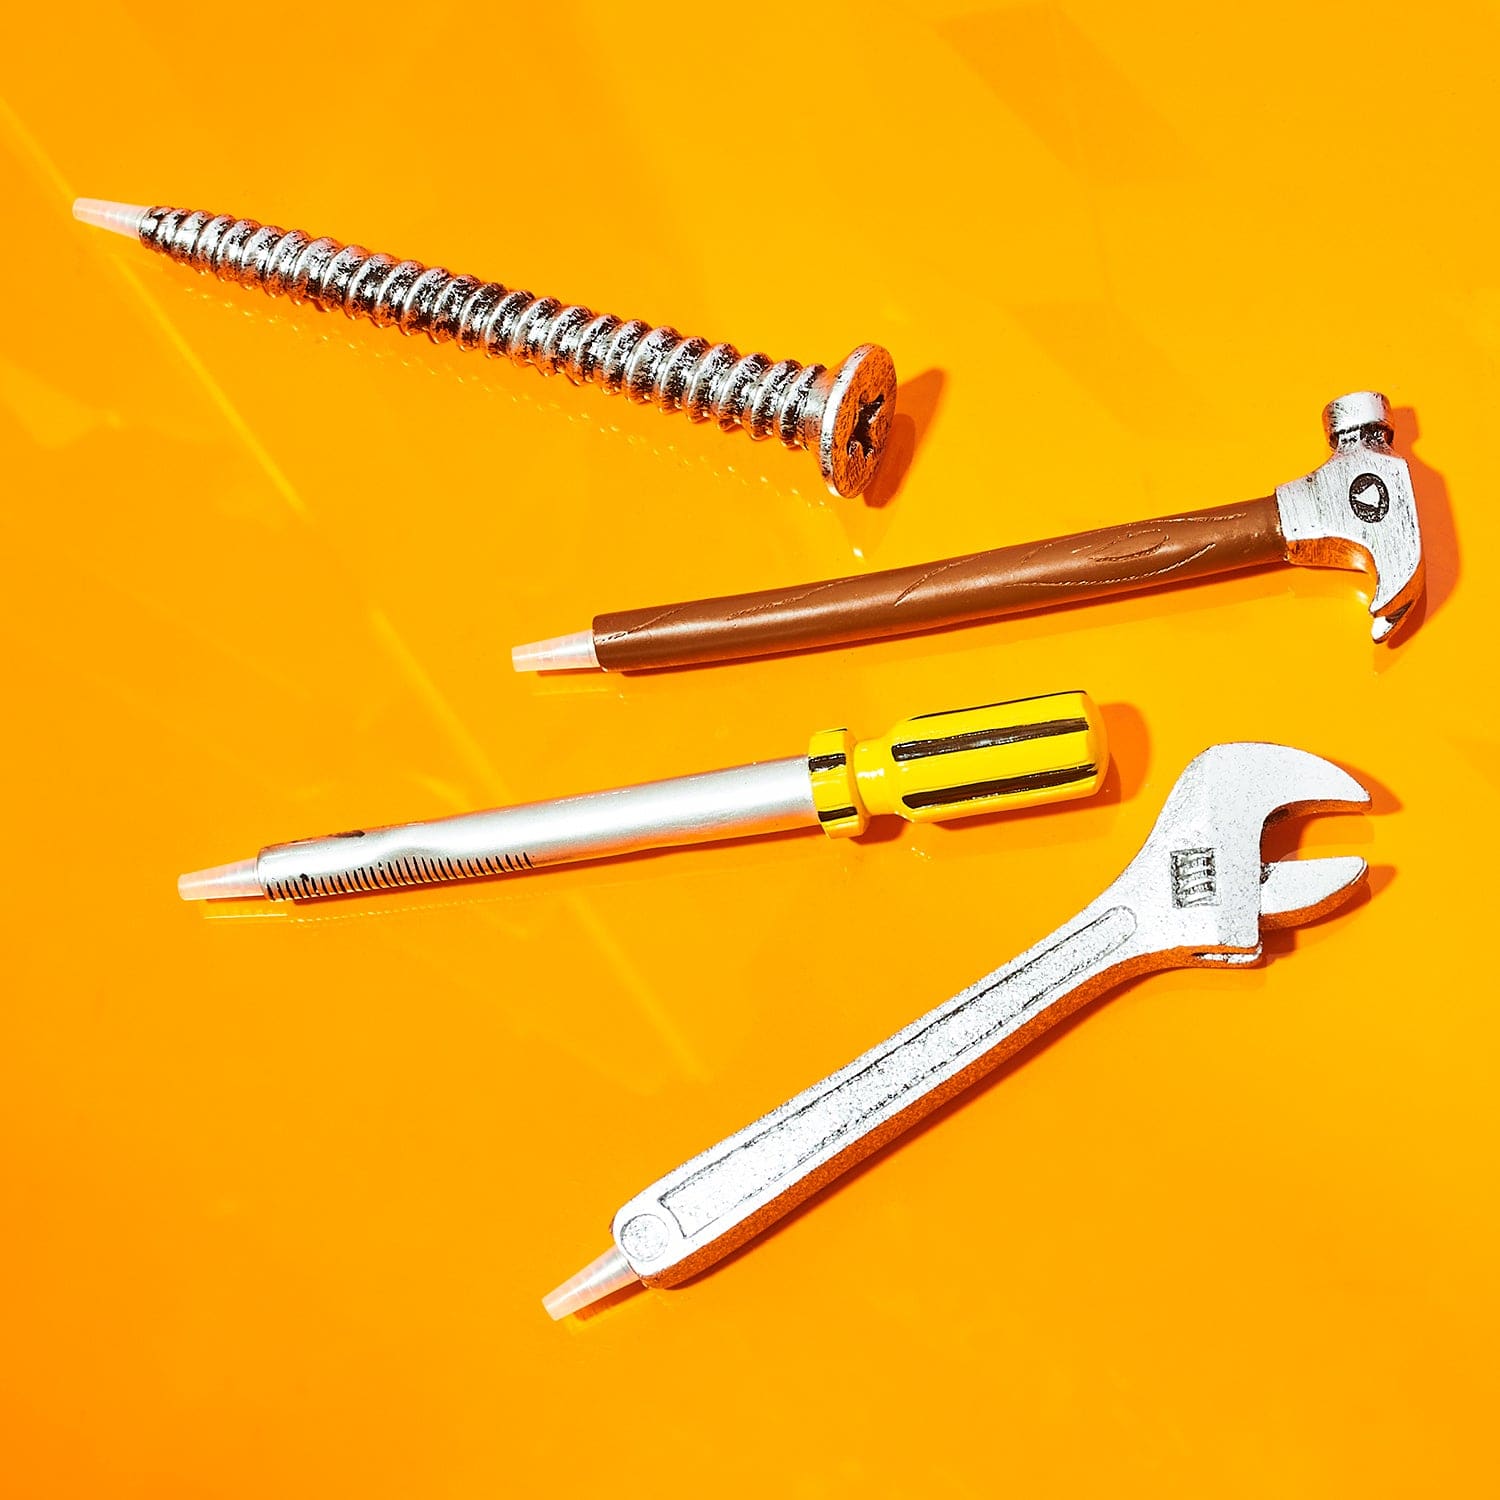 Builder Tool Pen 0623 - Q223 - Xmasinjuly